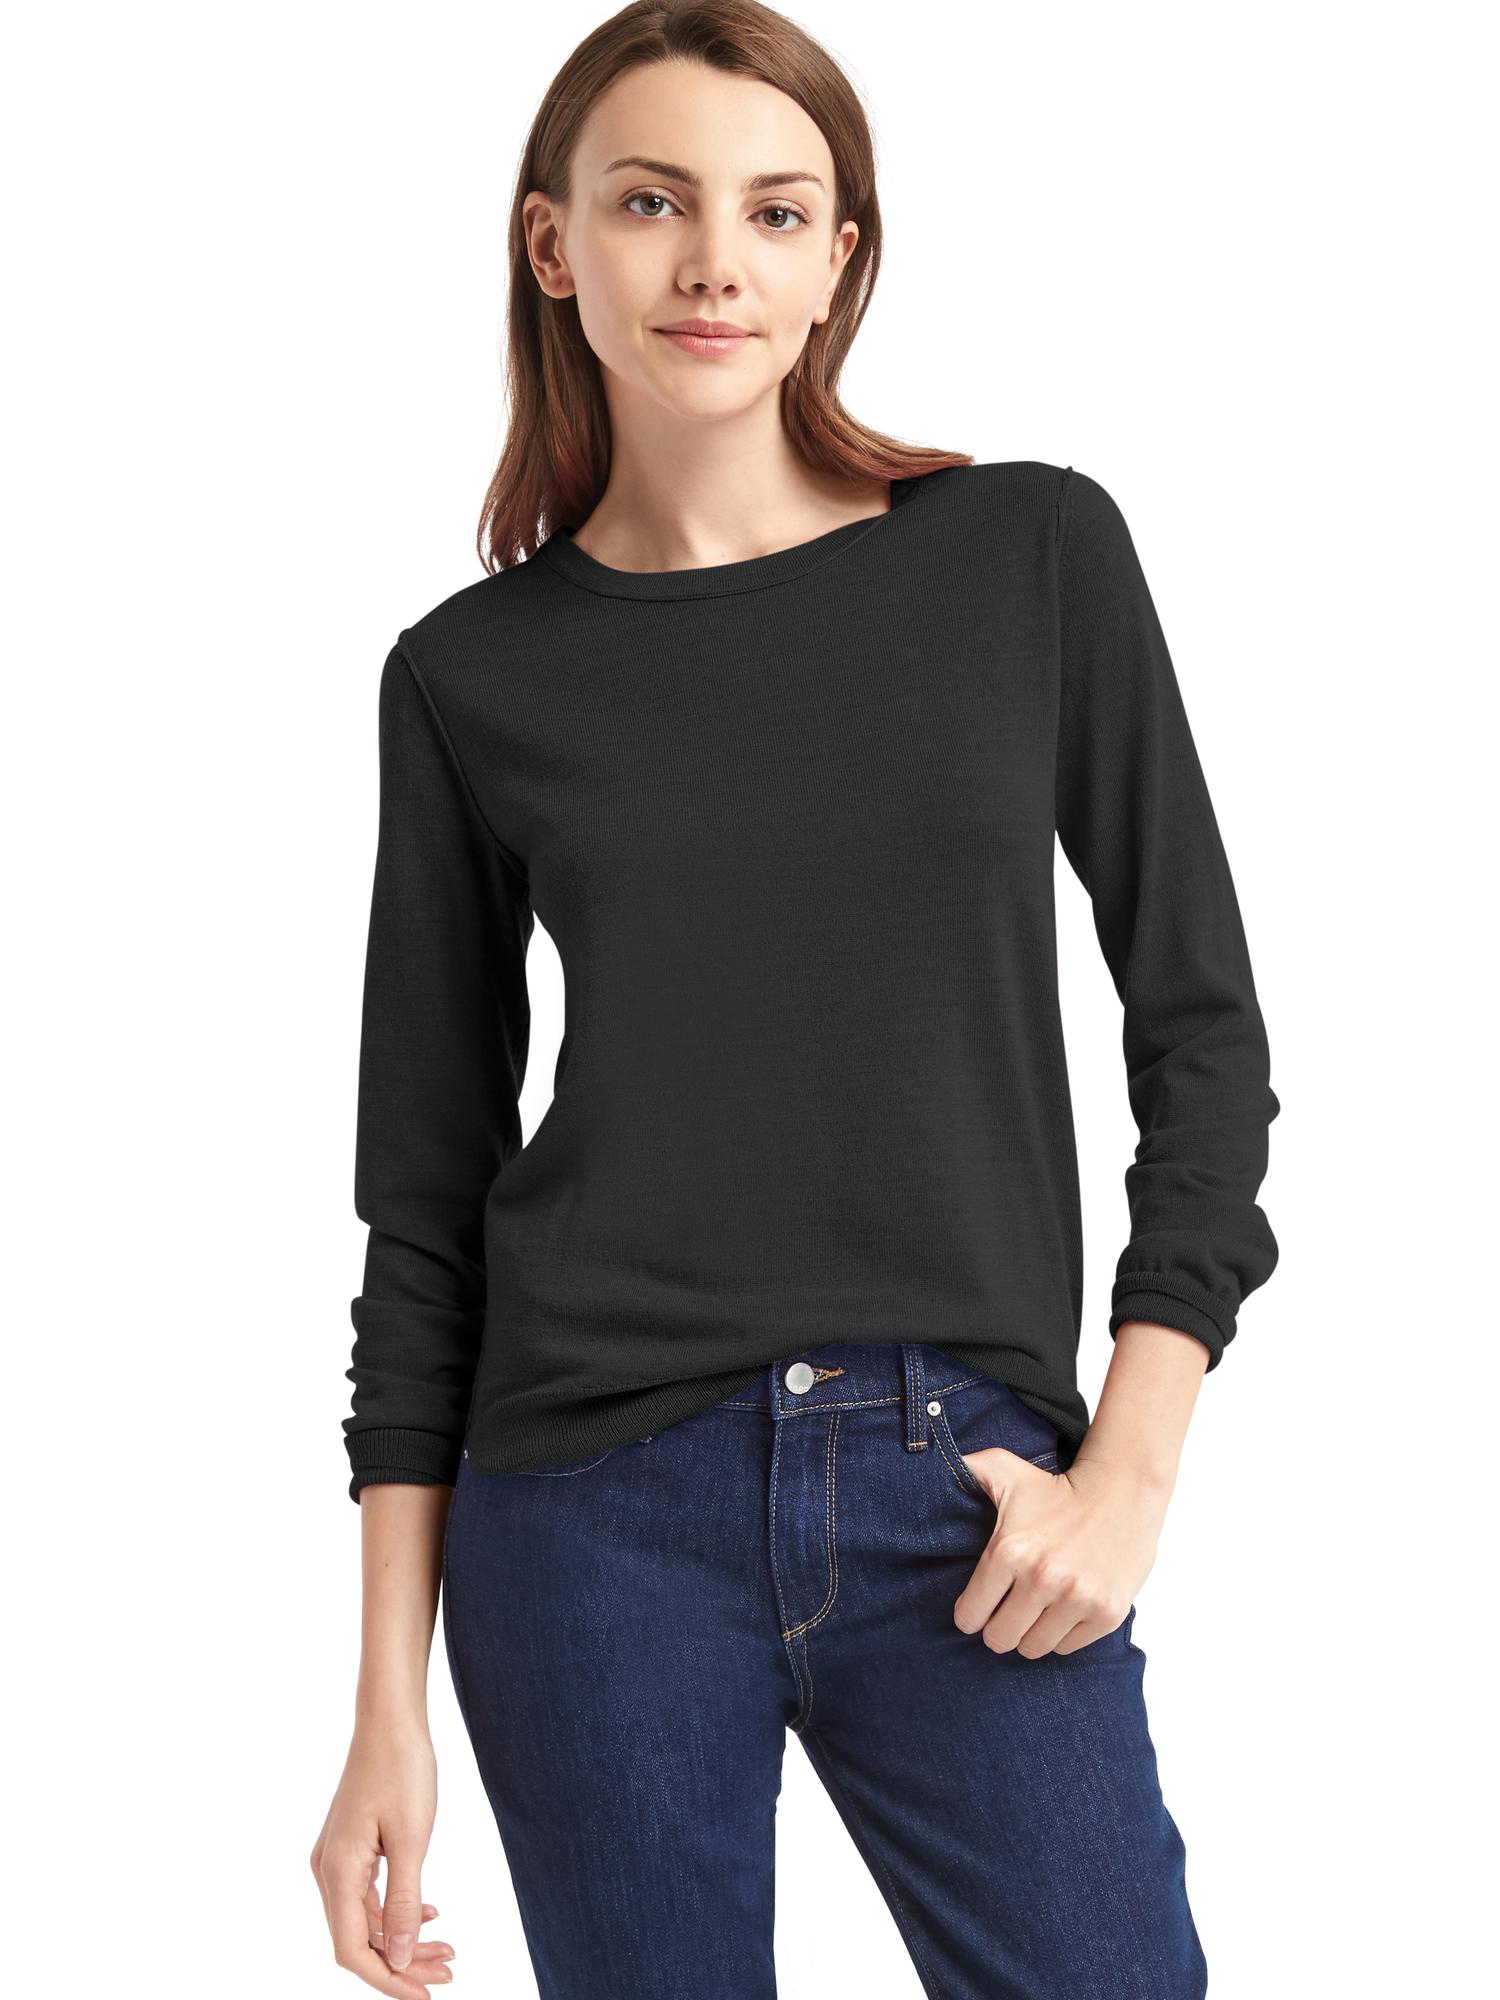 Merino wool sweater | Gap